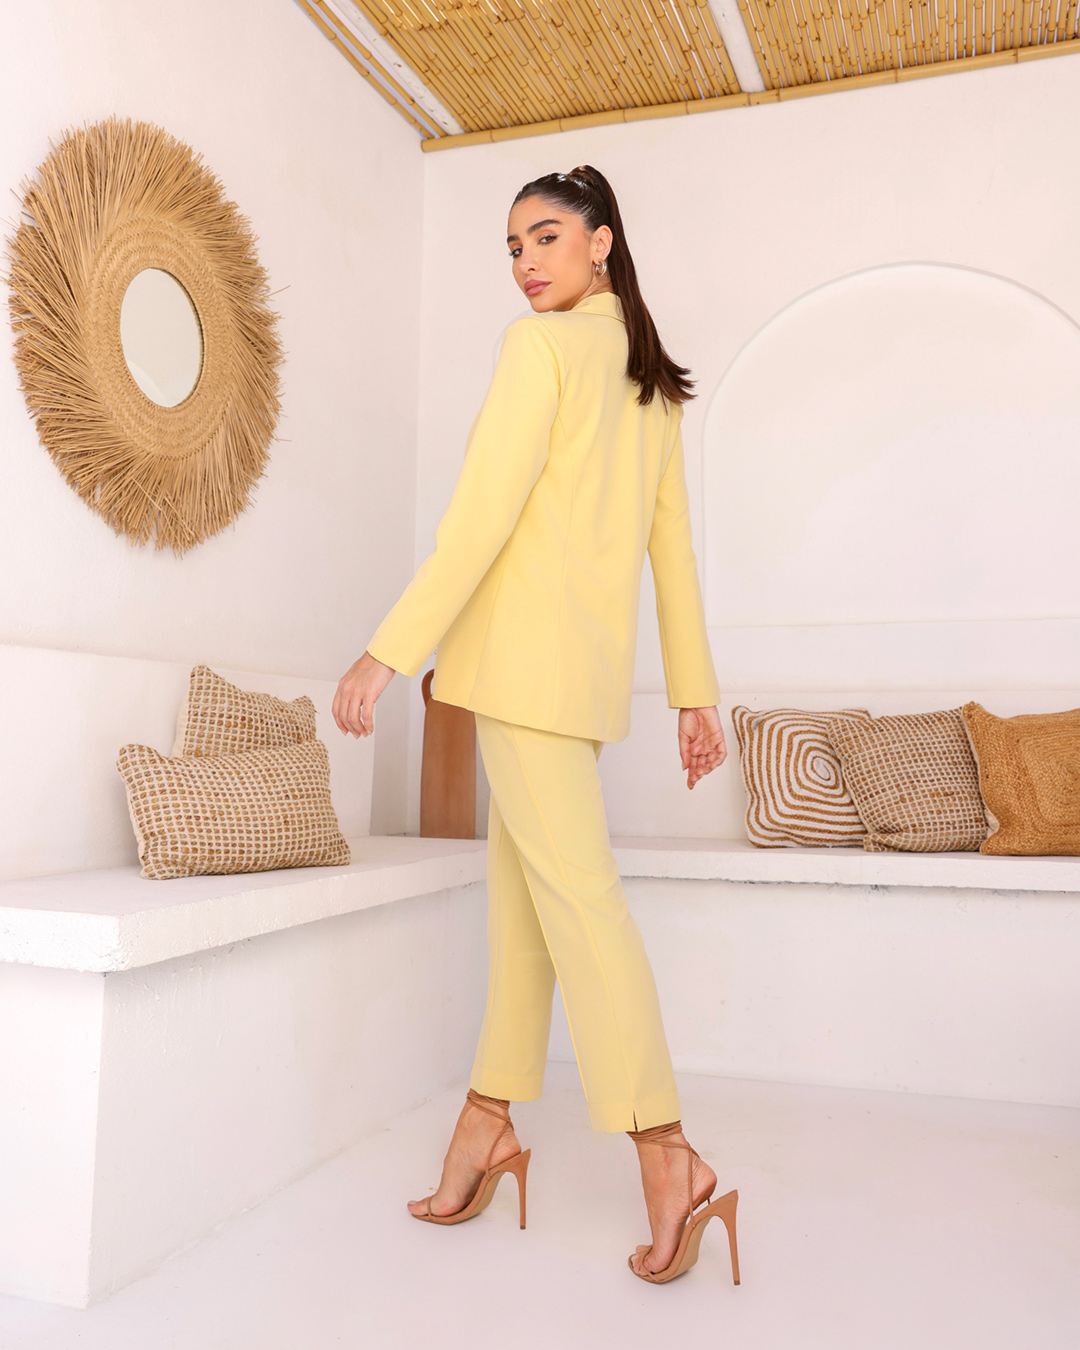 Dot Clothing - Blazer Dot Clothing Tailoring Yellow - 2073AMARELO